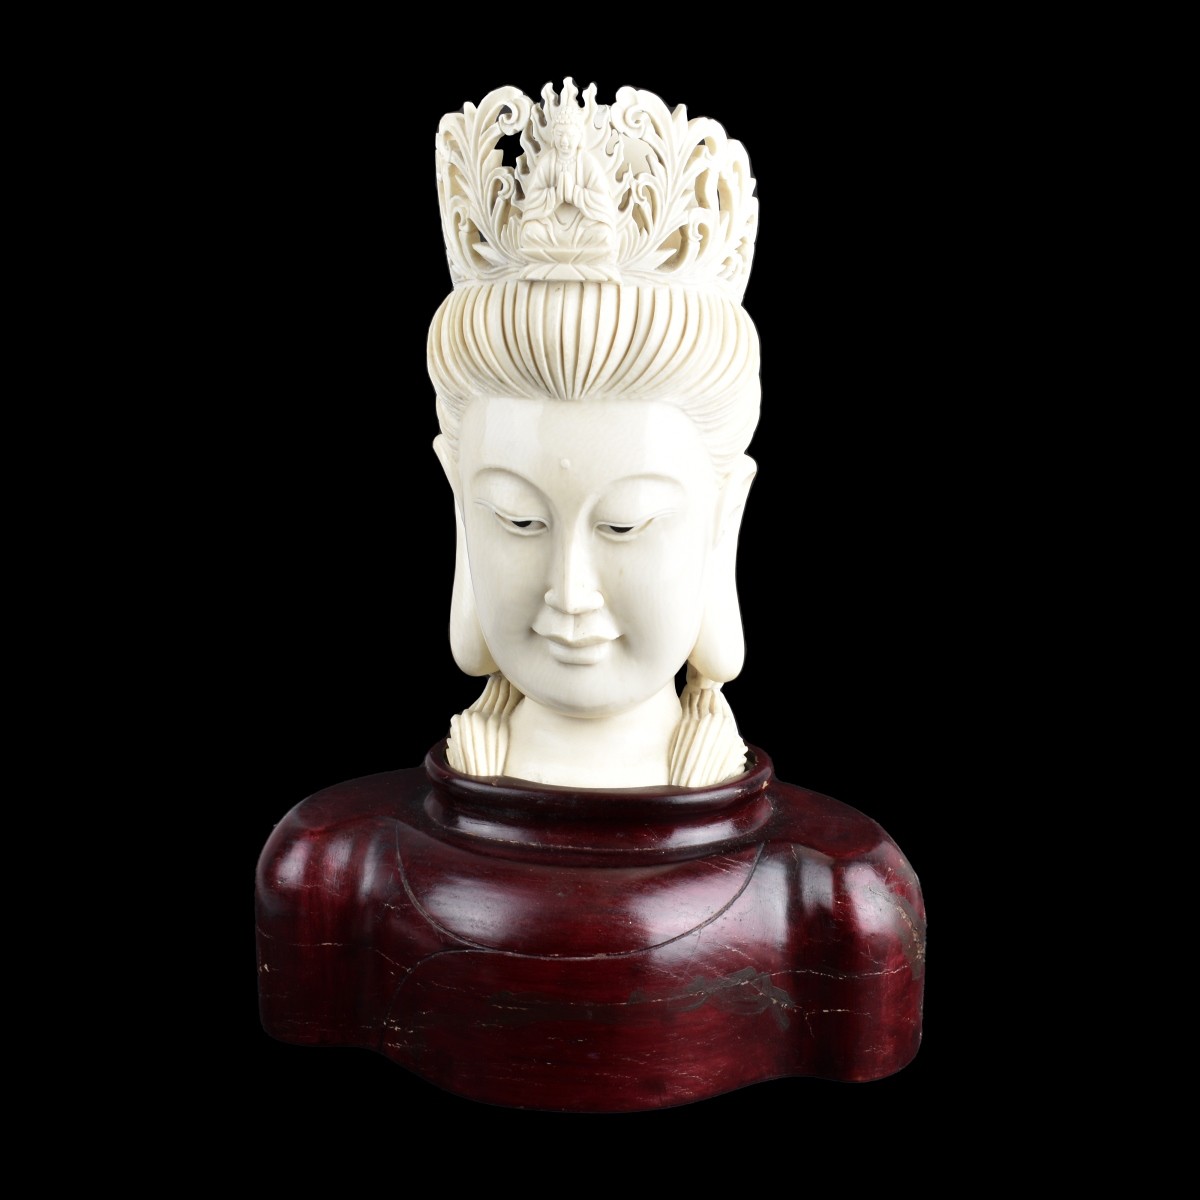 Chinese Buddha Head Figurine